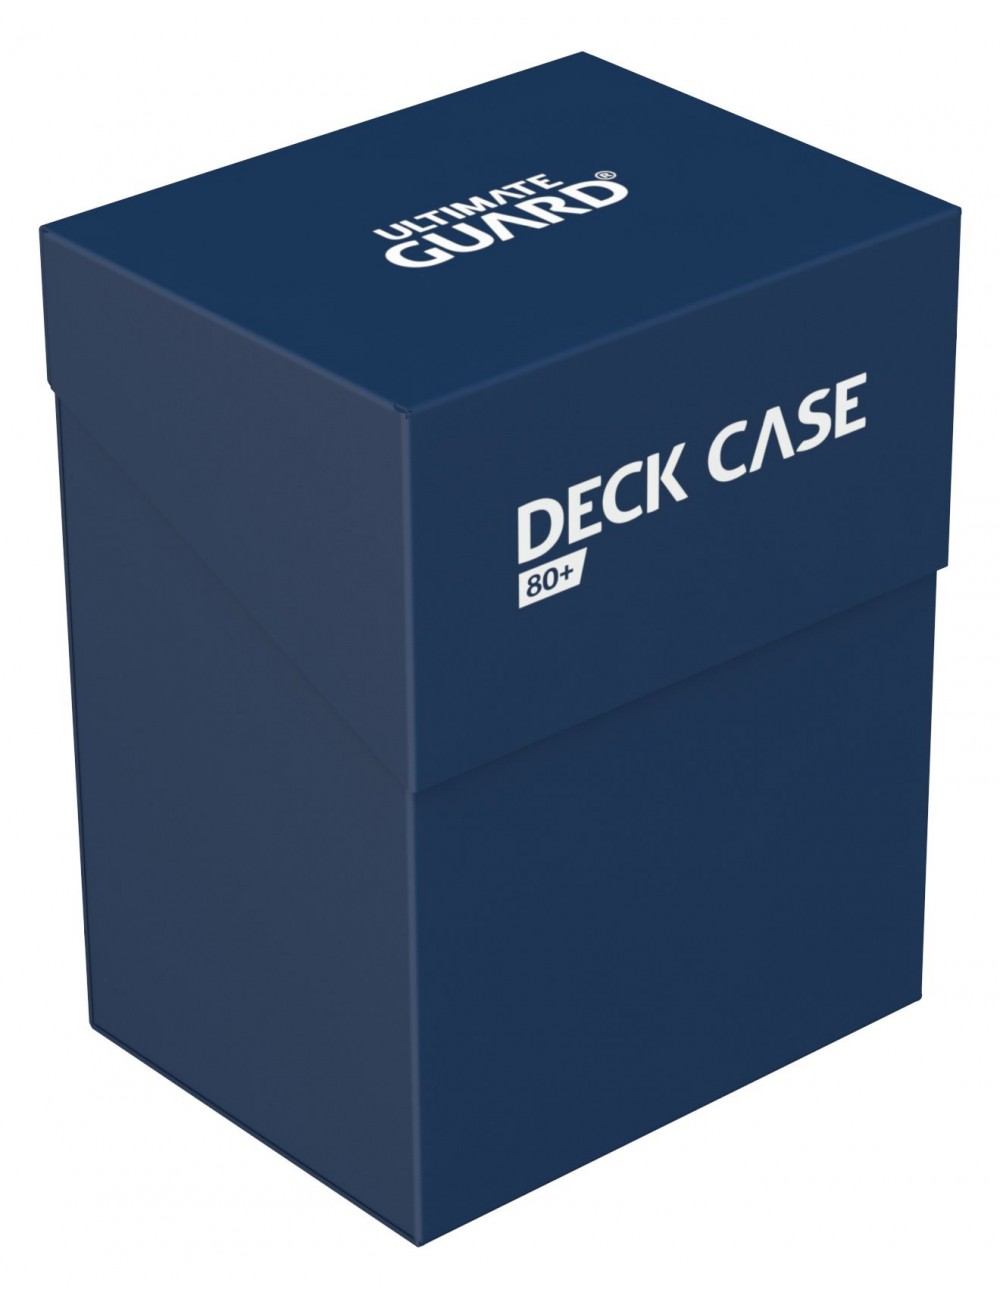 Deck Case 80+ Azul Oscuro Ugd010249  Ultimate Guard